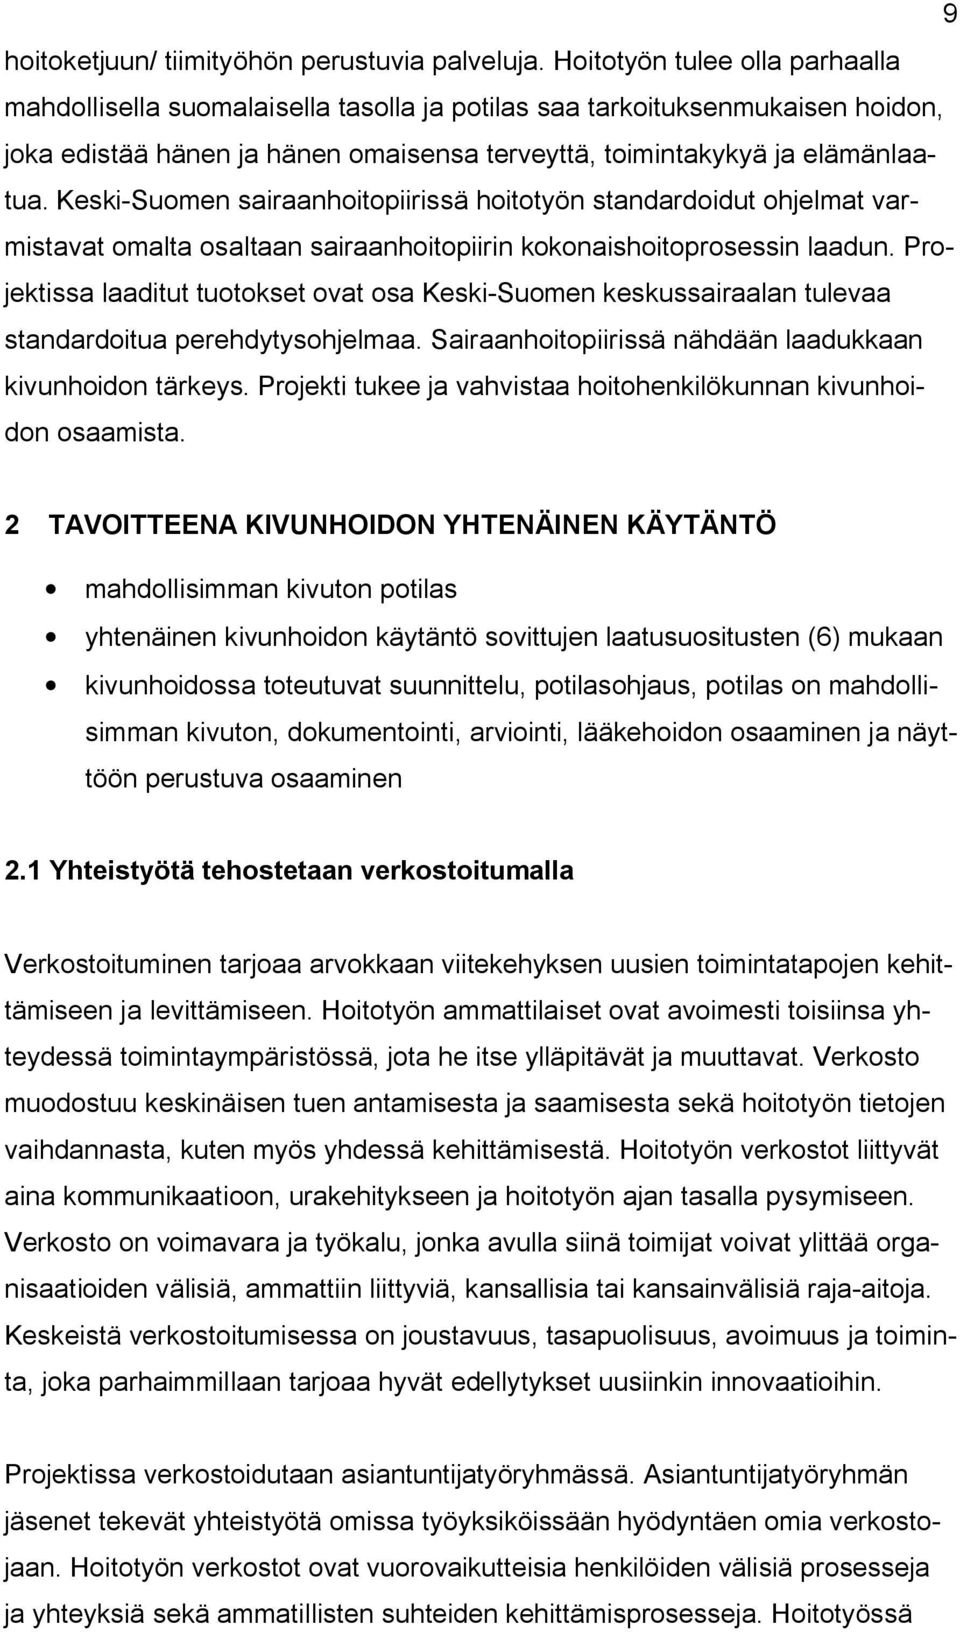 Keski Suomen sairaanhoitopiirissä hoitotyön standardoidut ohjelmat varmistavat omalta osaltaan sairaanhoitopiirin kokonaishoitoprosessin laadun.